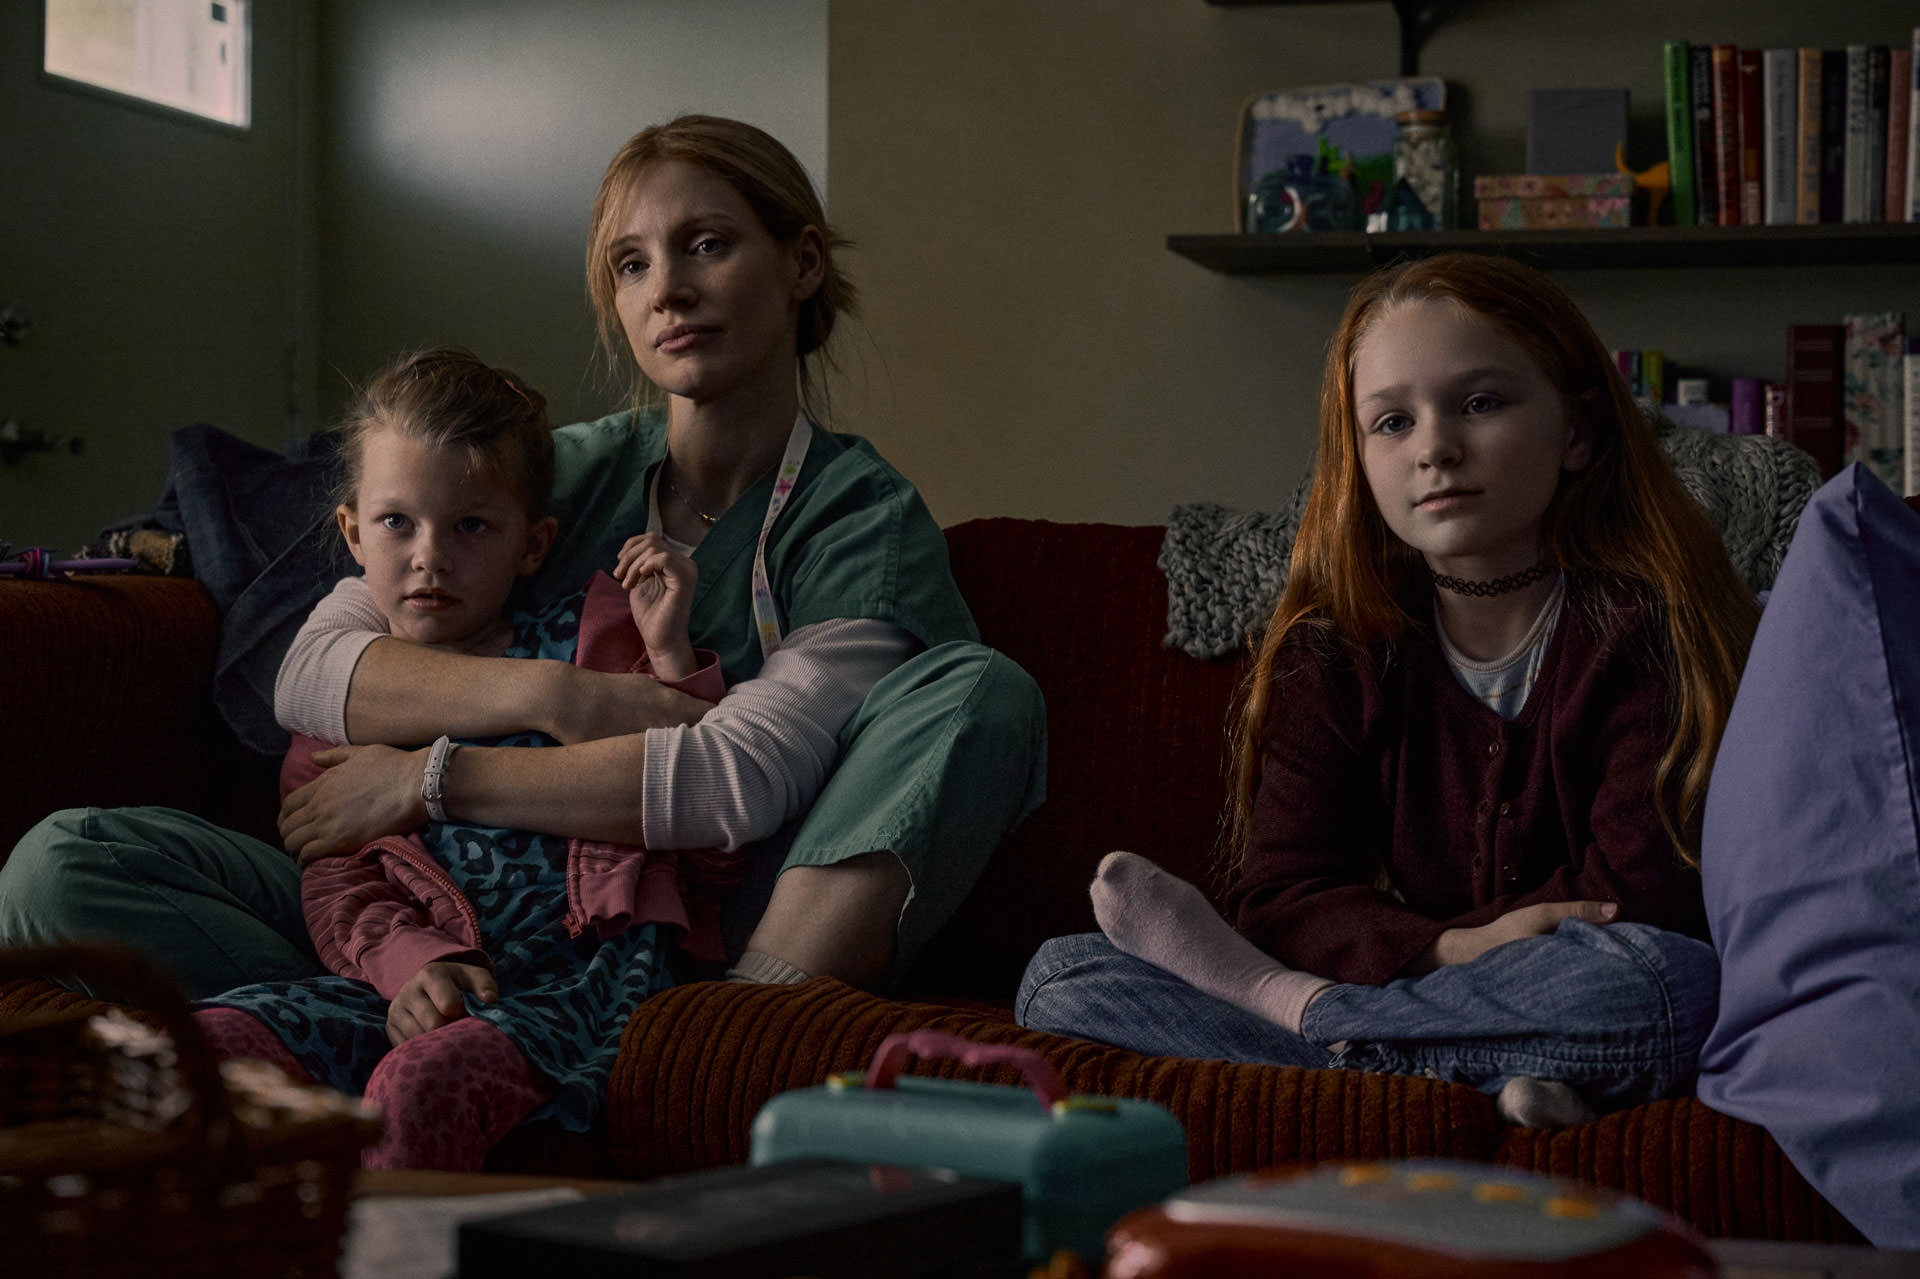 Jessica Chastain tenant un garçon assis à côté d'une petite fille sur un canapé dans une maison dans une scène du film Good Nurse réalisé par Tobias Lindholm.